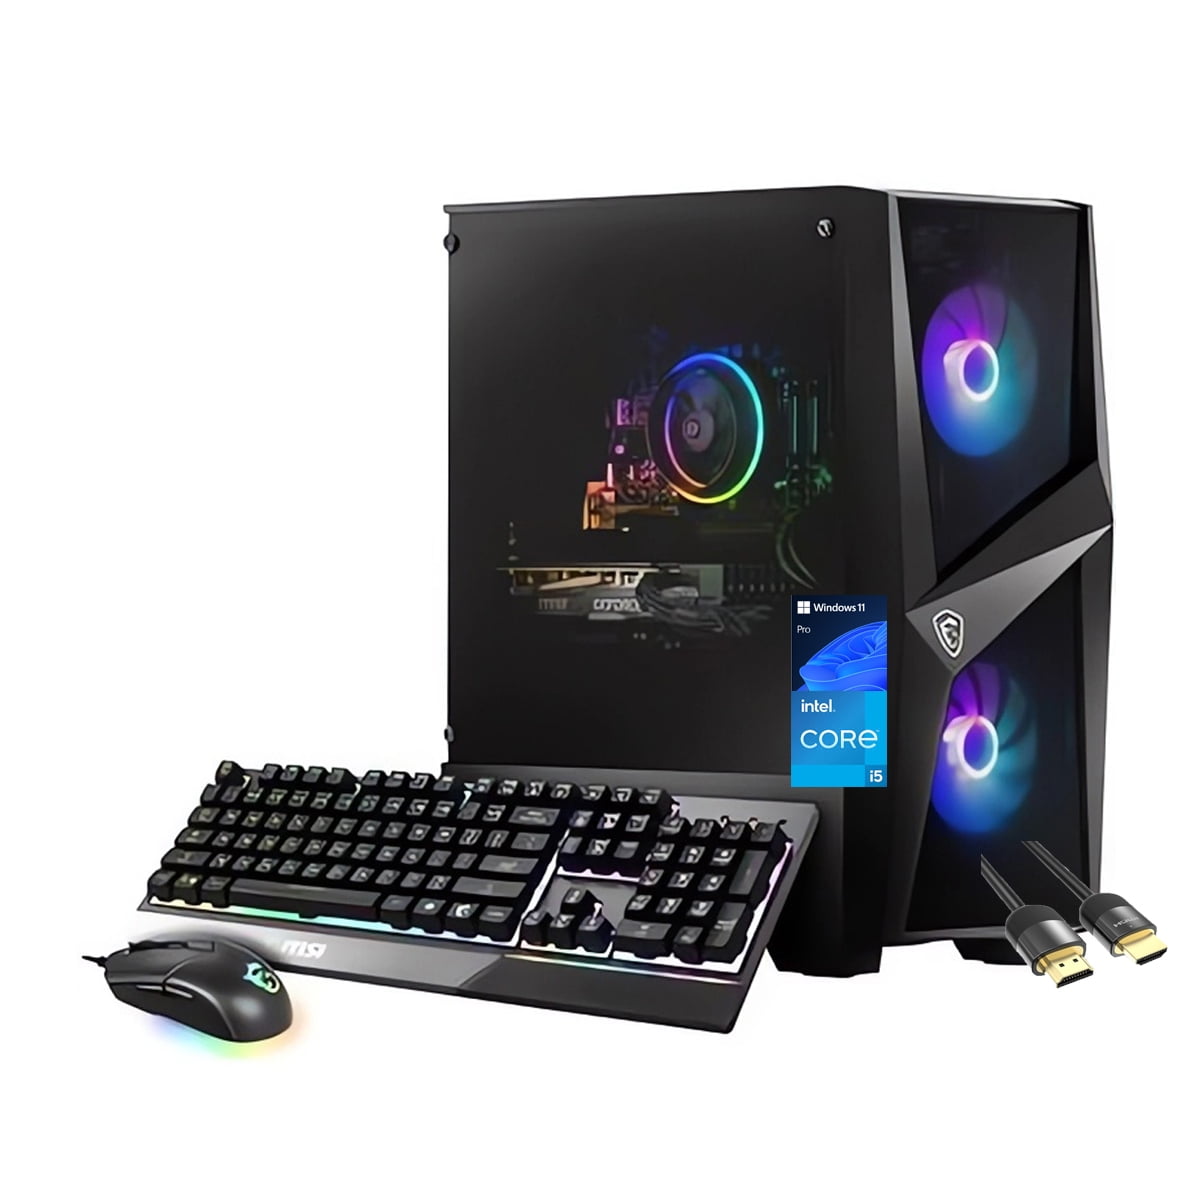 MSI Codex R Gaming Desktop, Intel i5-13400F, NVIDIA RTX 4060 8GB, 16GB  DDR5, 1TB SSD, Win 11, Black 